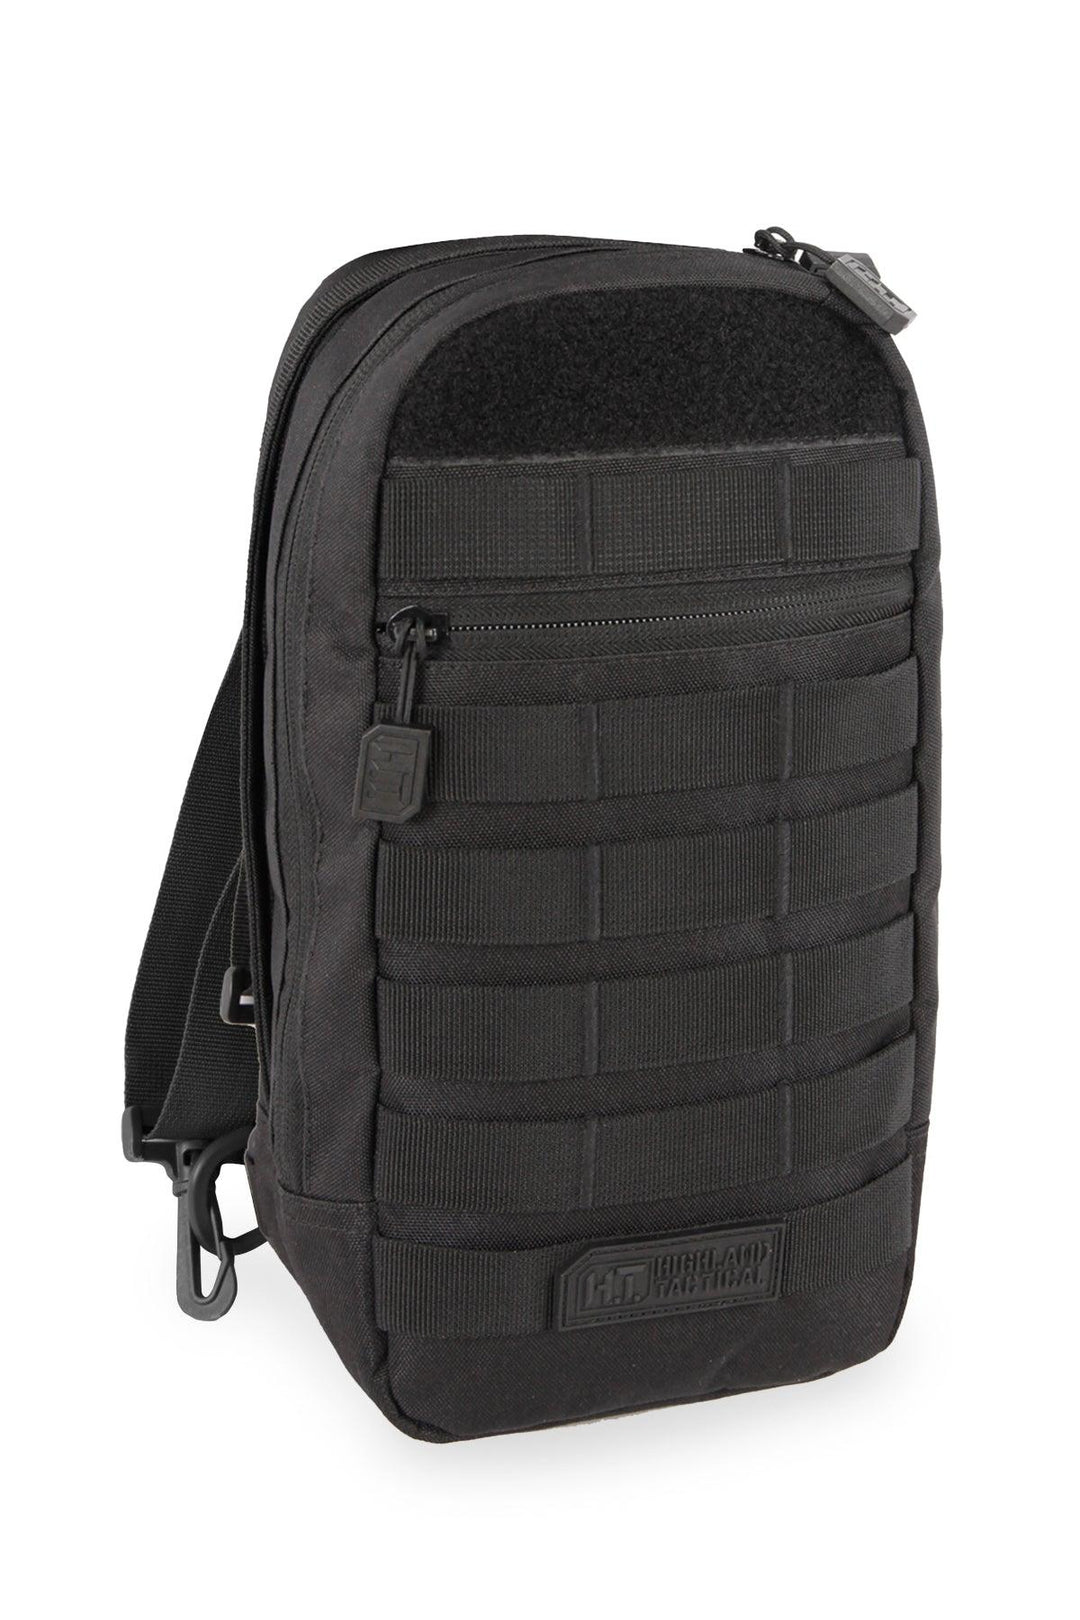 Highland Tactical Tactical Sling Bag, Black